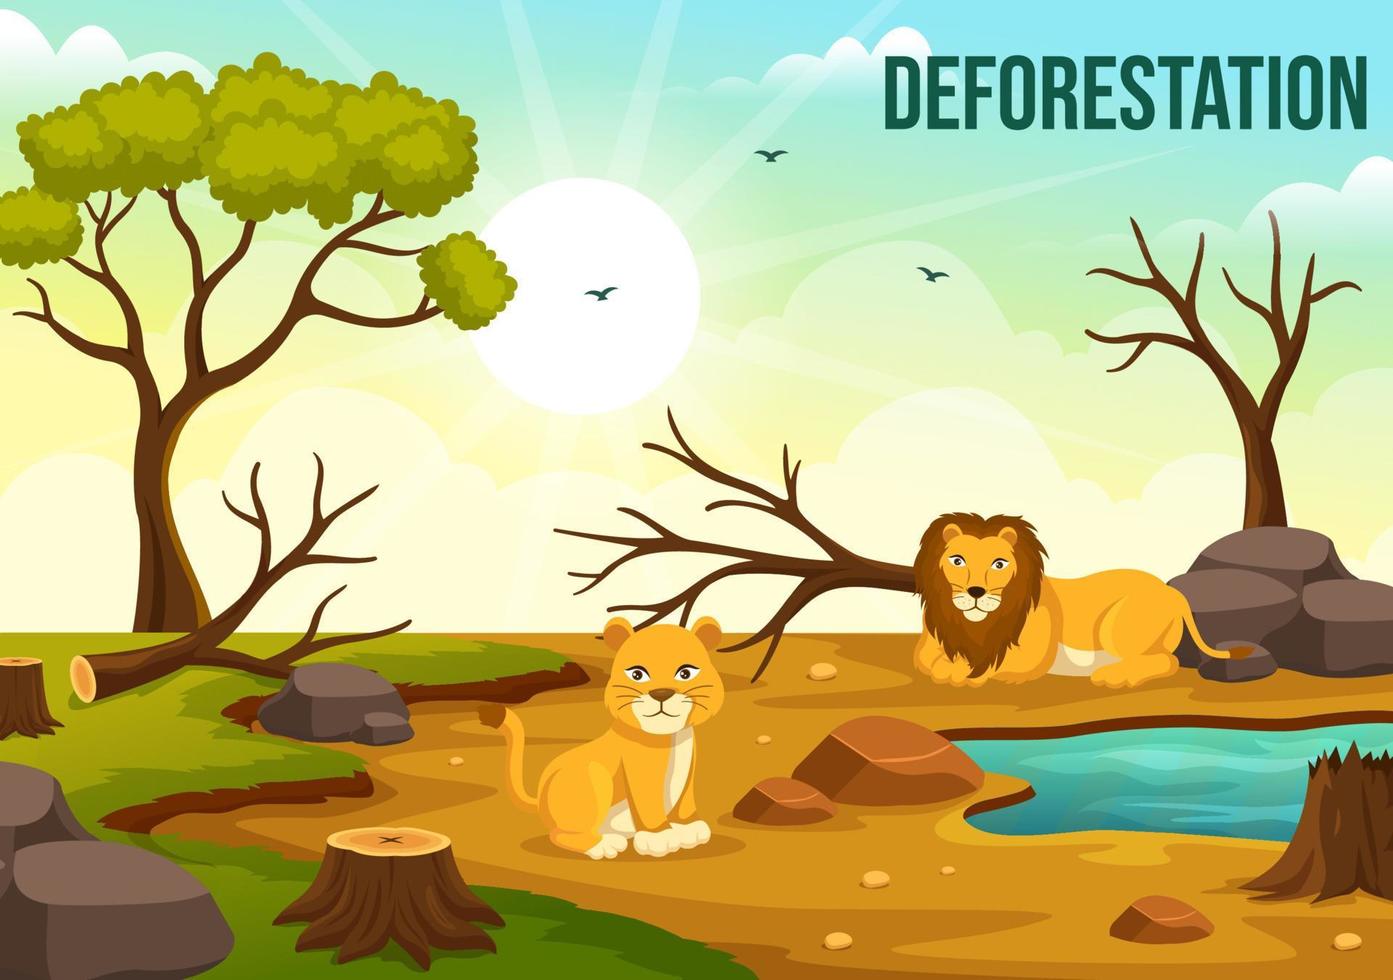 la déforestation illustration avec arbre dans le abattu forêt et brûlant dans la pollution provoquant le extinction de animaux dans dessin animé main tiré modèles vecteur